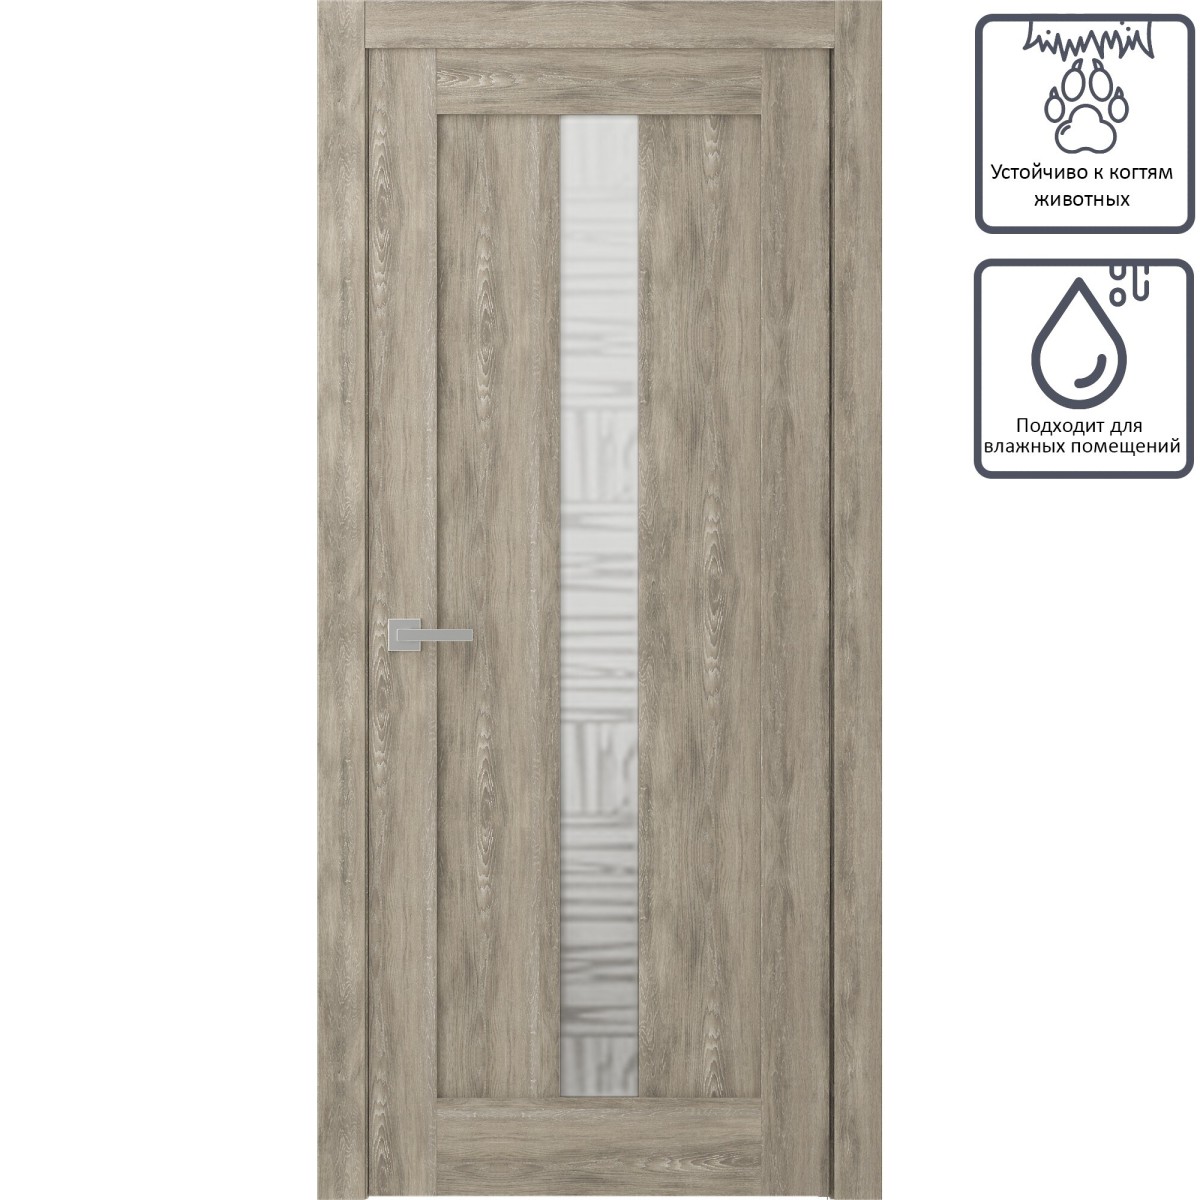 Дверь межкомнатная остеклённая Челси 80x200 см, экошпон, цвет дуб медовый